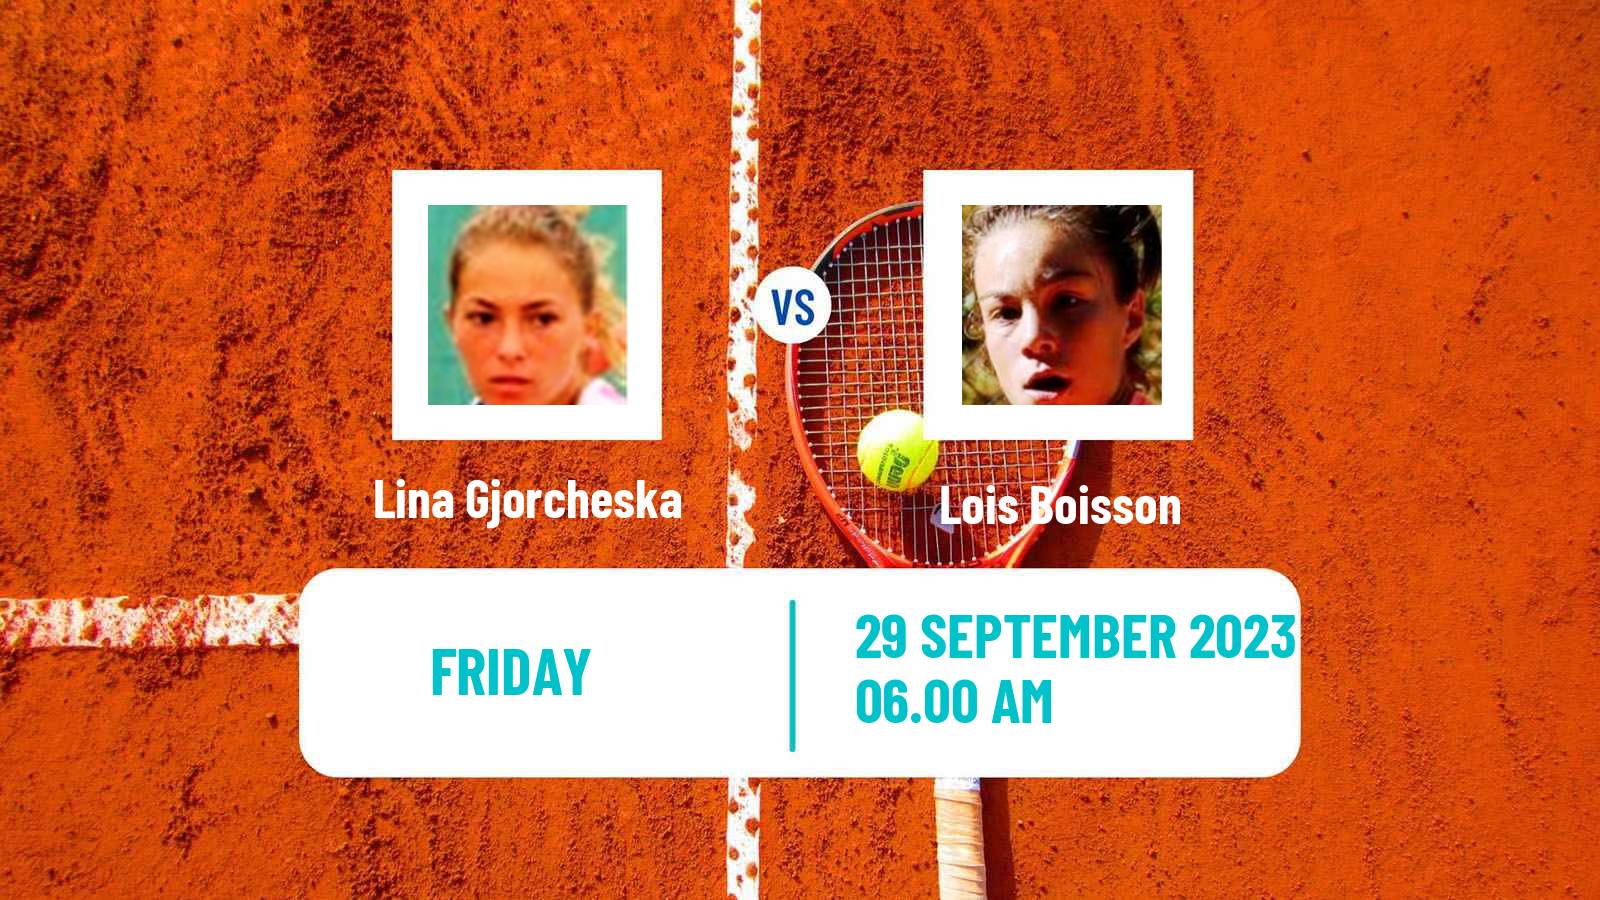 Tennis ITF W40 Kursumlijska Banja Women Lina Gjorcheska - Lois Boisson